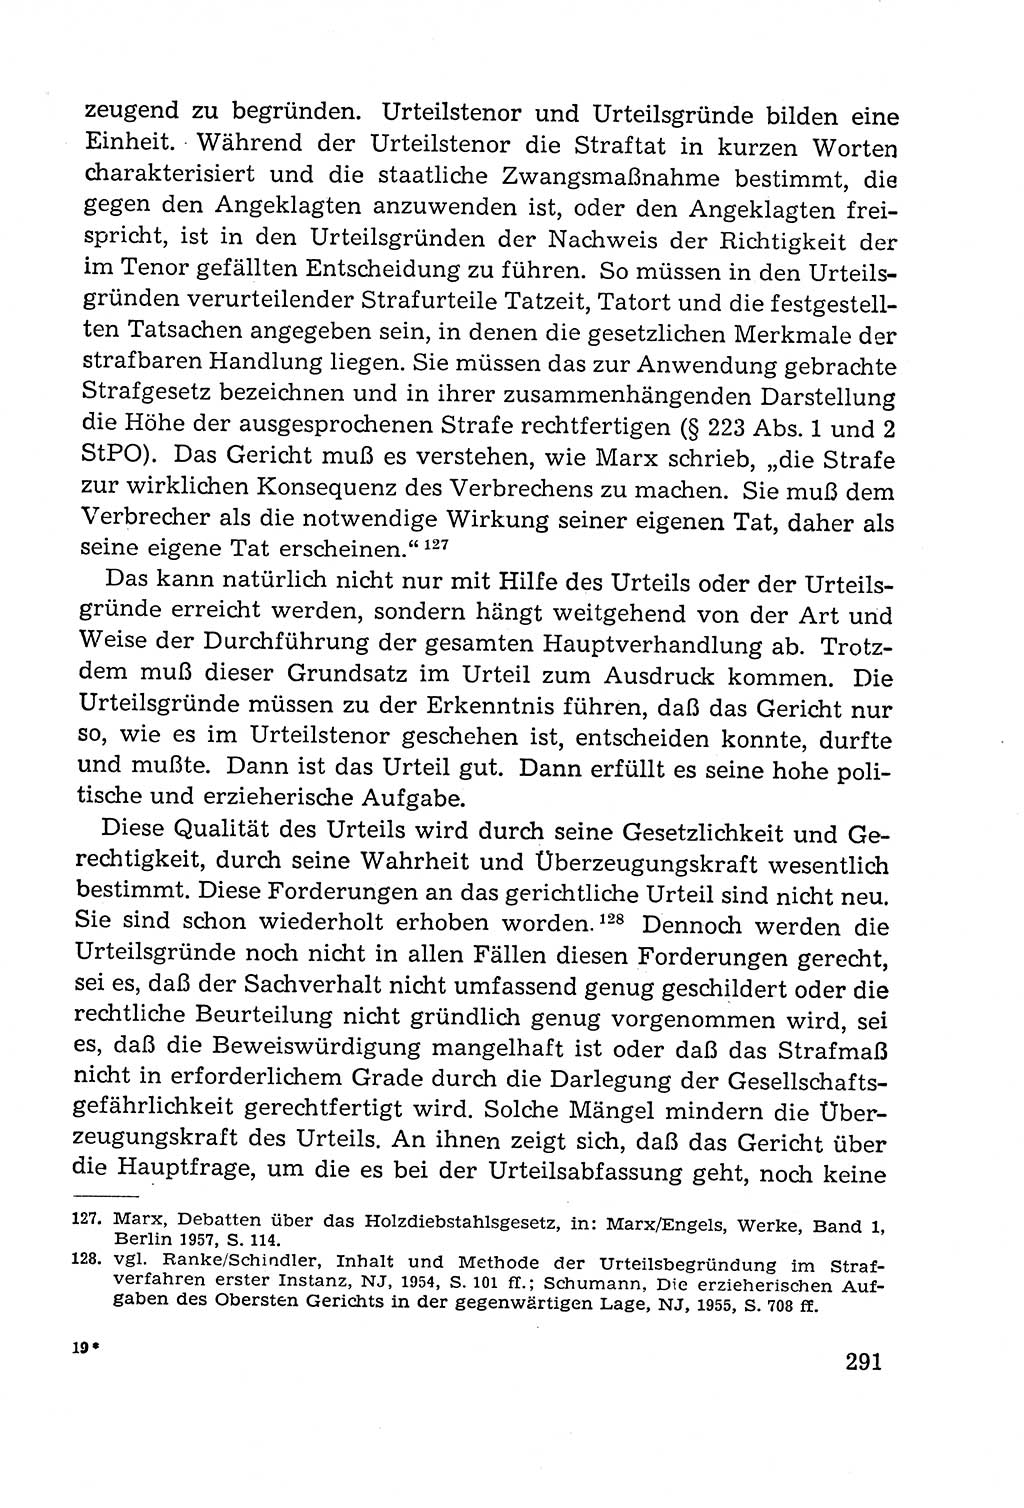 Leitfaden des Strafprozeßrechts der Deutschen Demokratischen Republik (DDR) 1959, Seite 291 (LF StPR DDR 1959, S. 291)